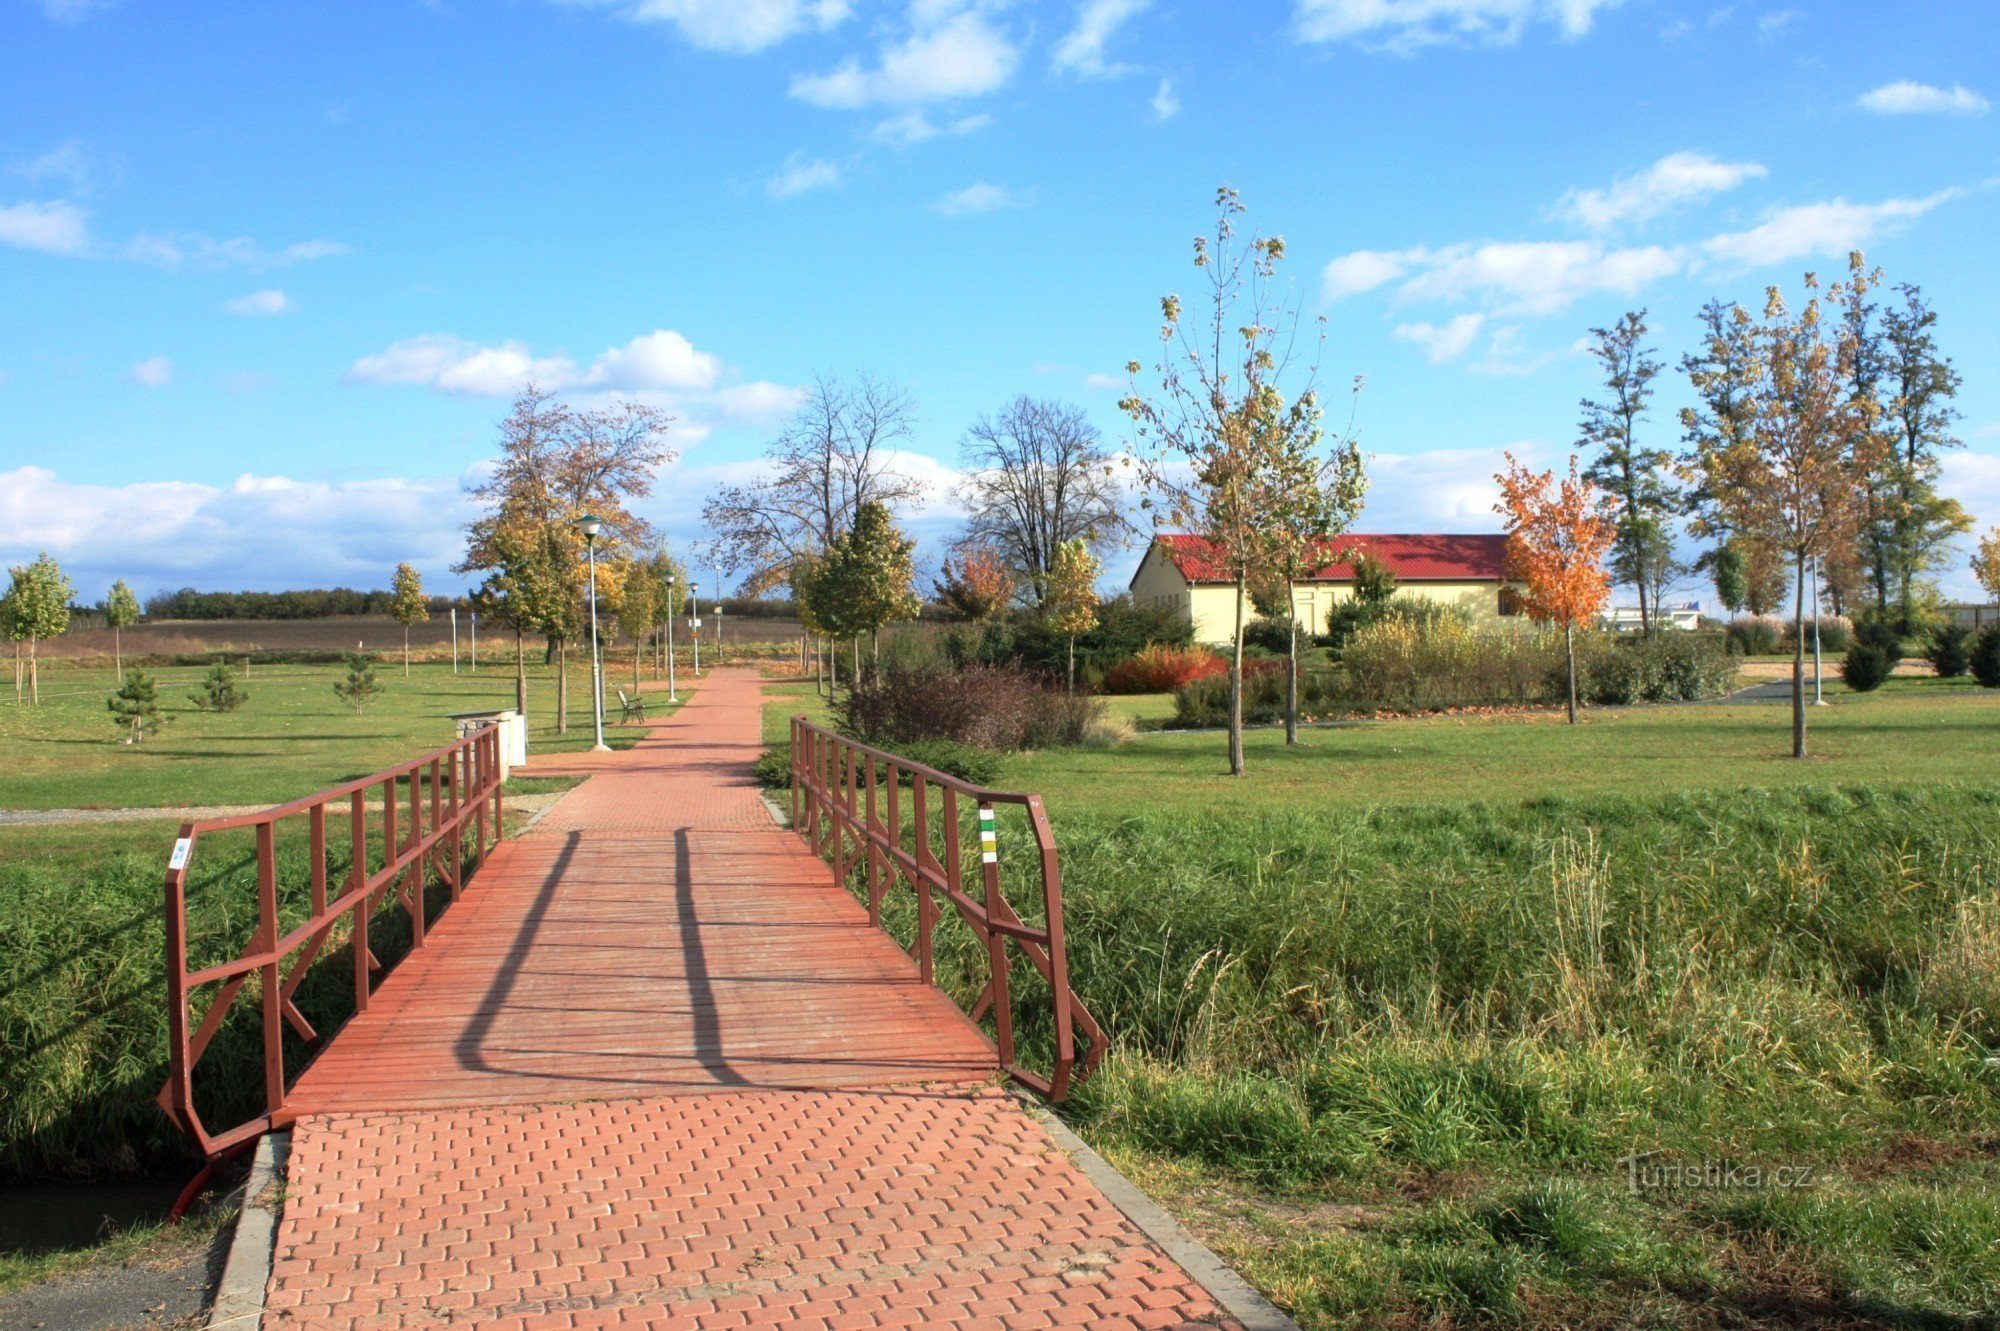 Velké Pavlovice - puisto lähellä rautatieasemaa